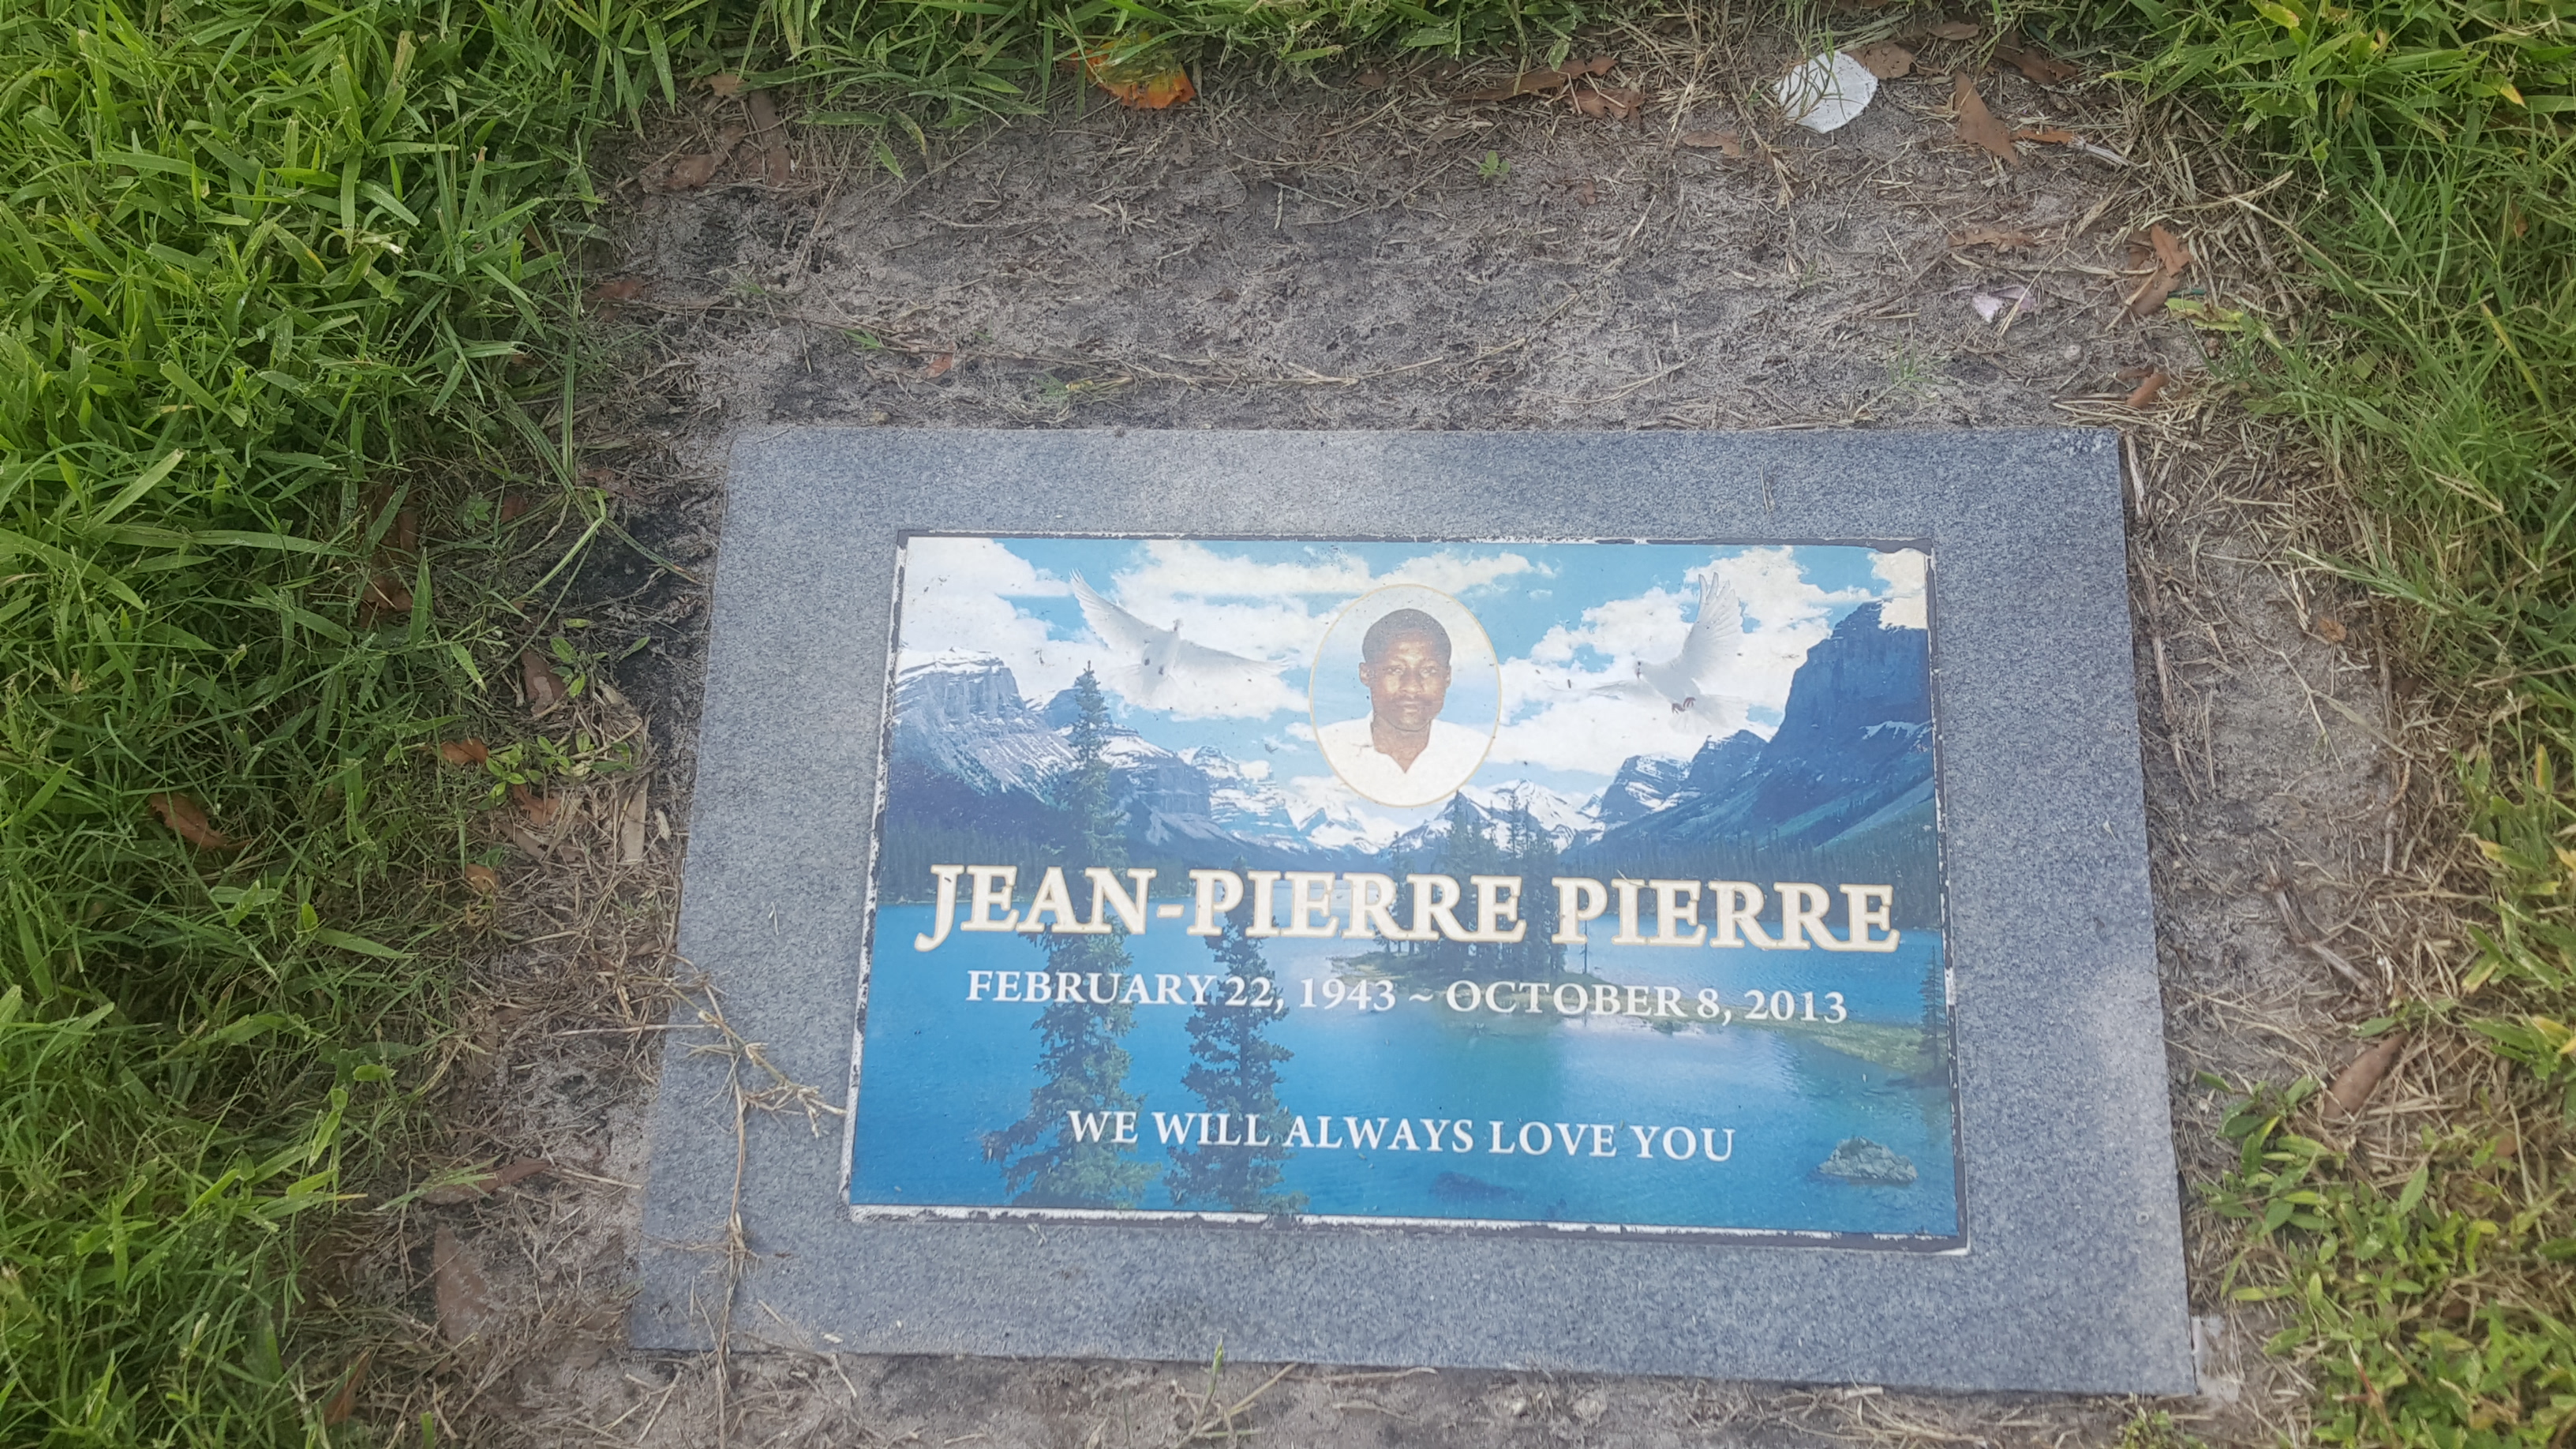 Jean-Pierre Pierre